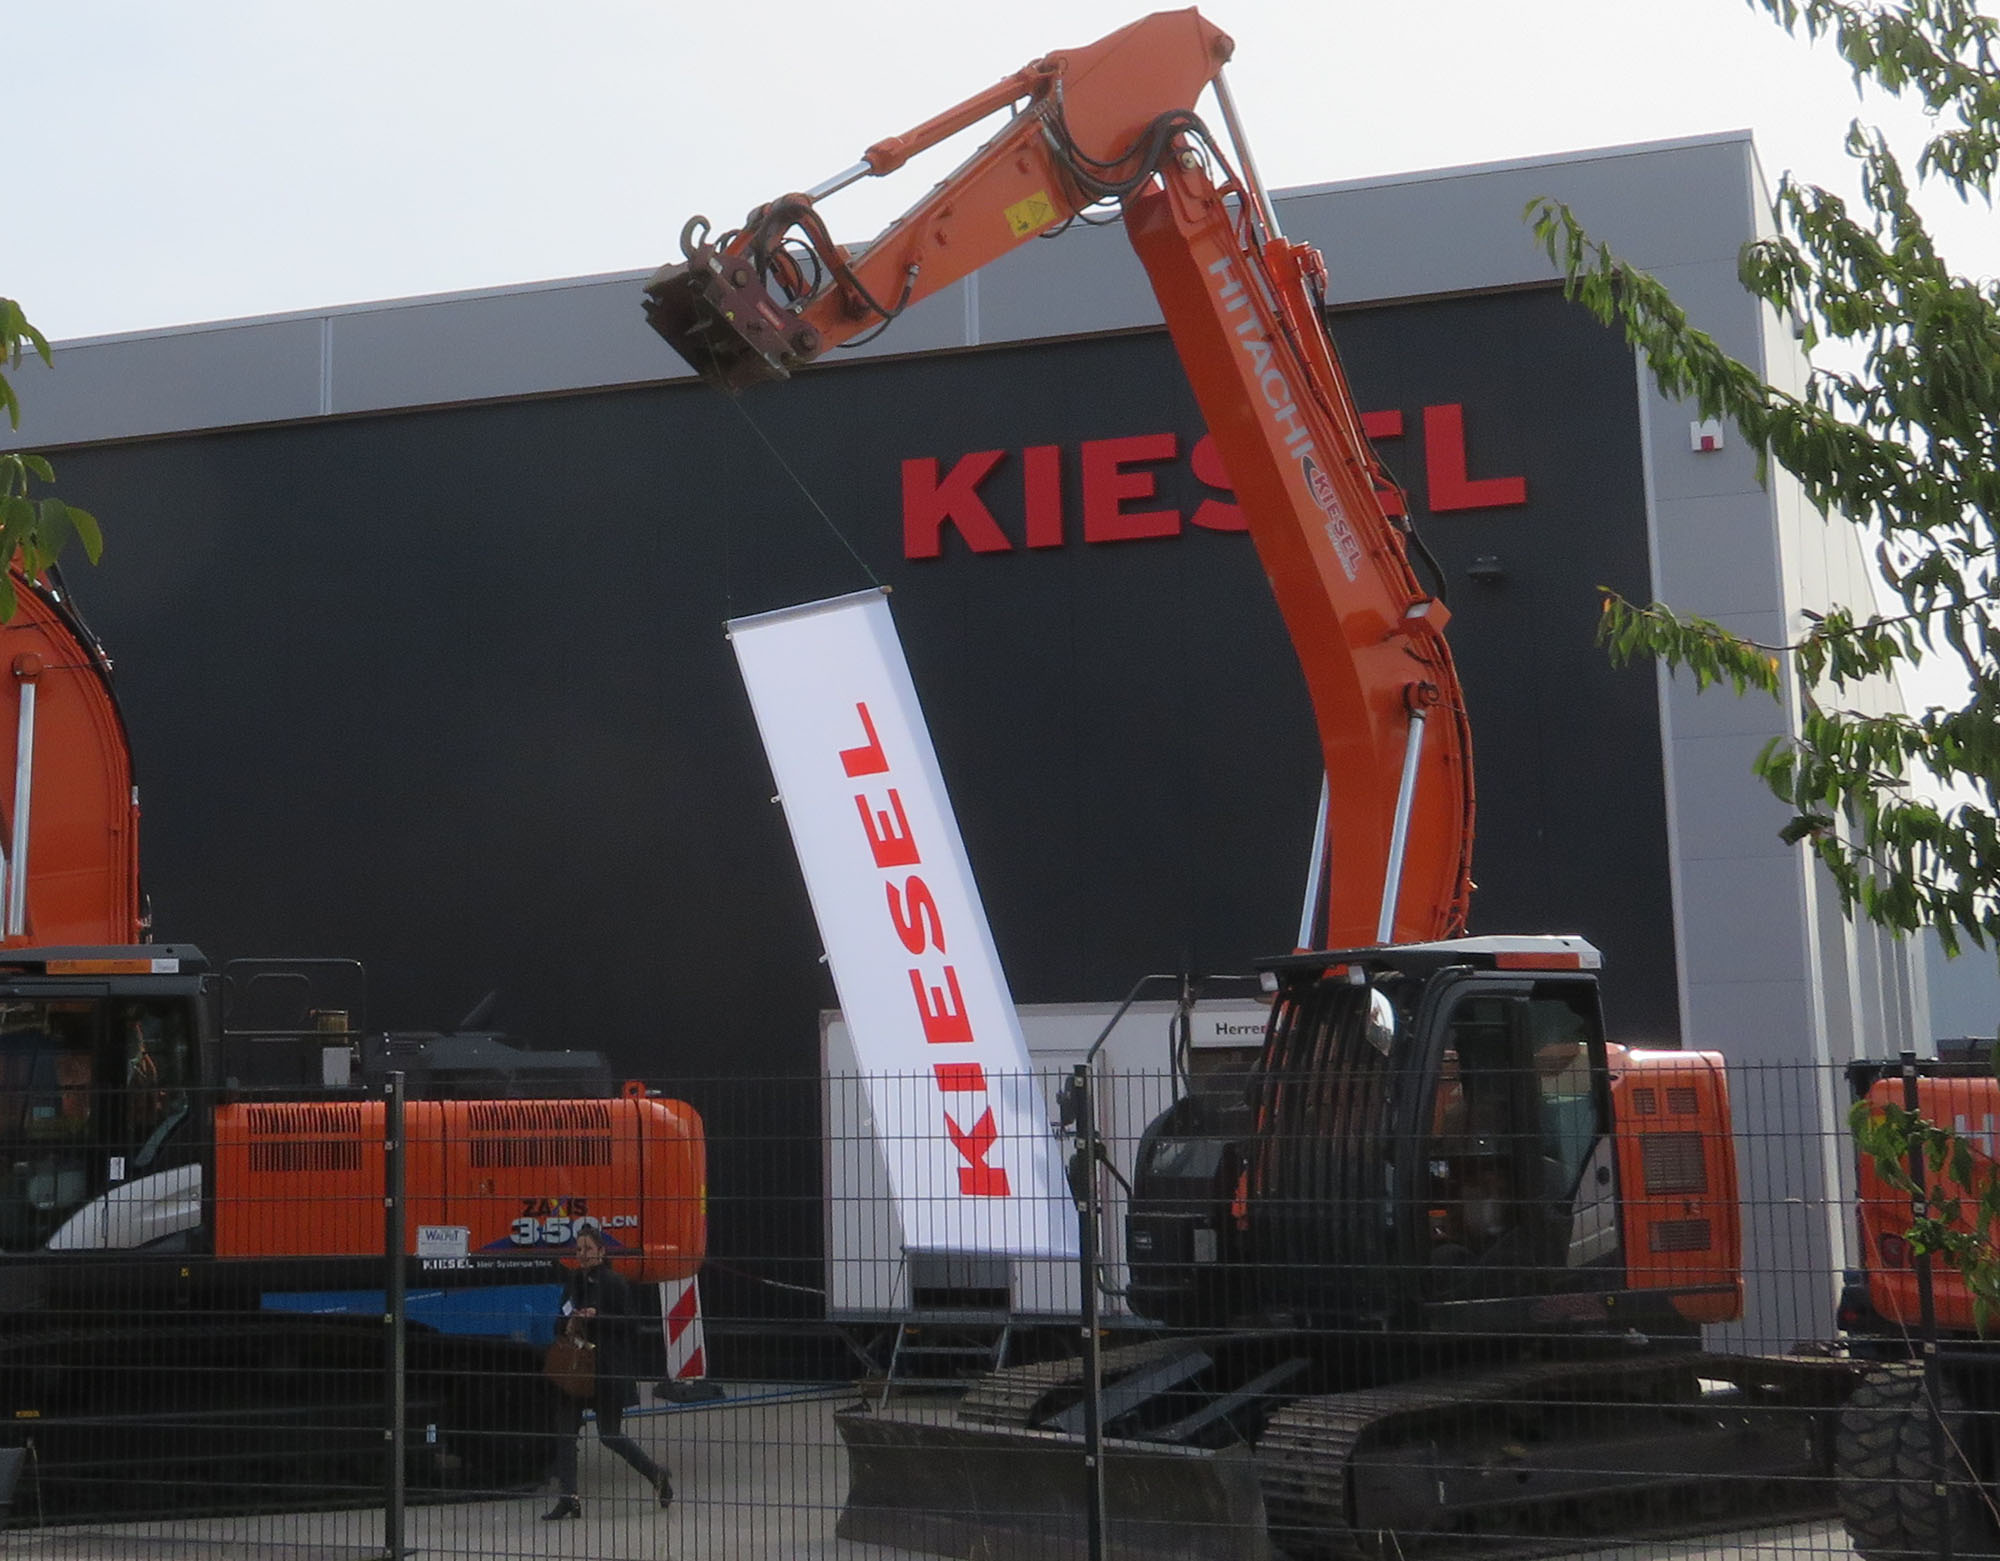 Vertriebs- und Service-Standort von Kiesel in Karlsruhe-Rheinstetten.  (Foto: Zacharias)